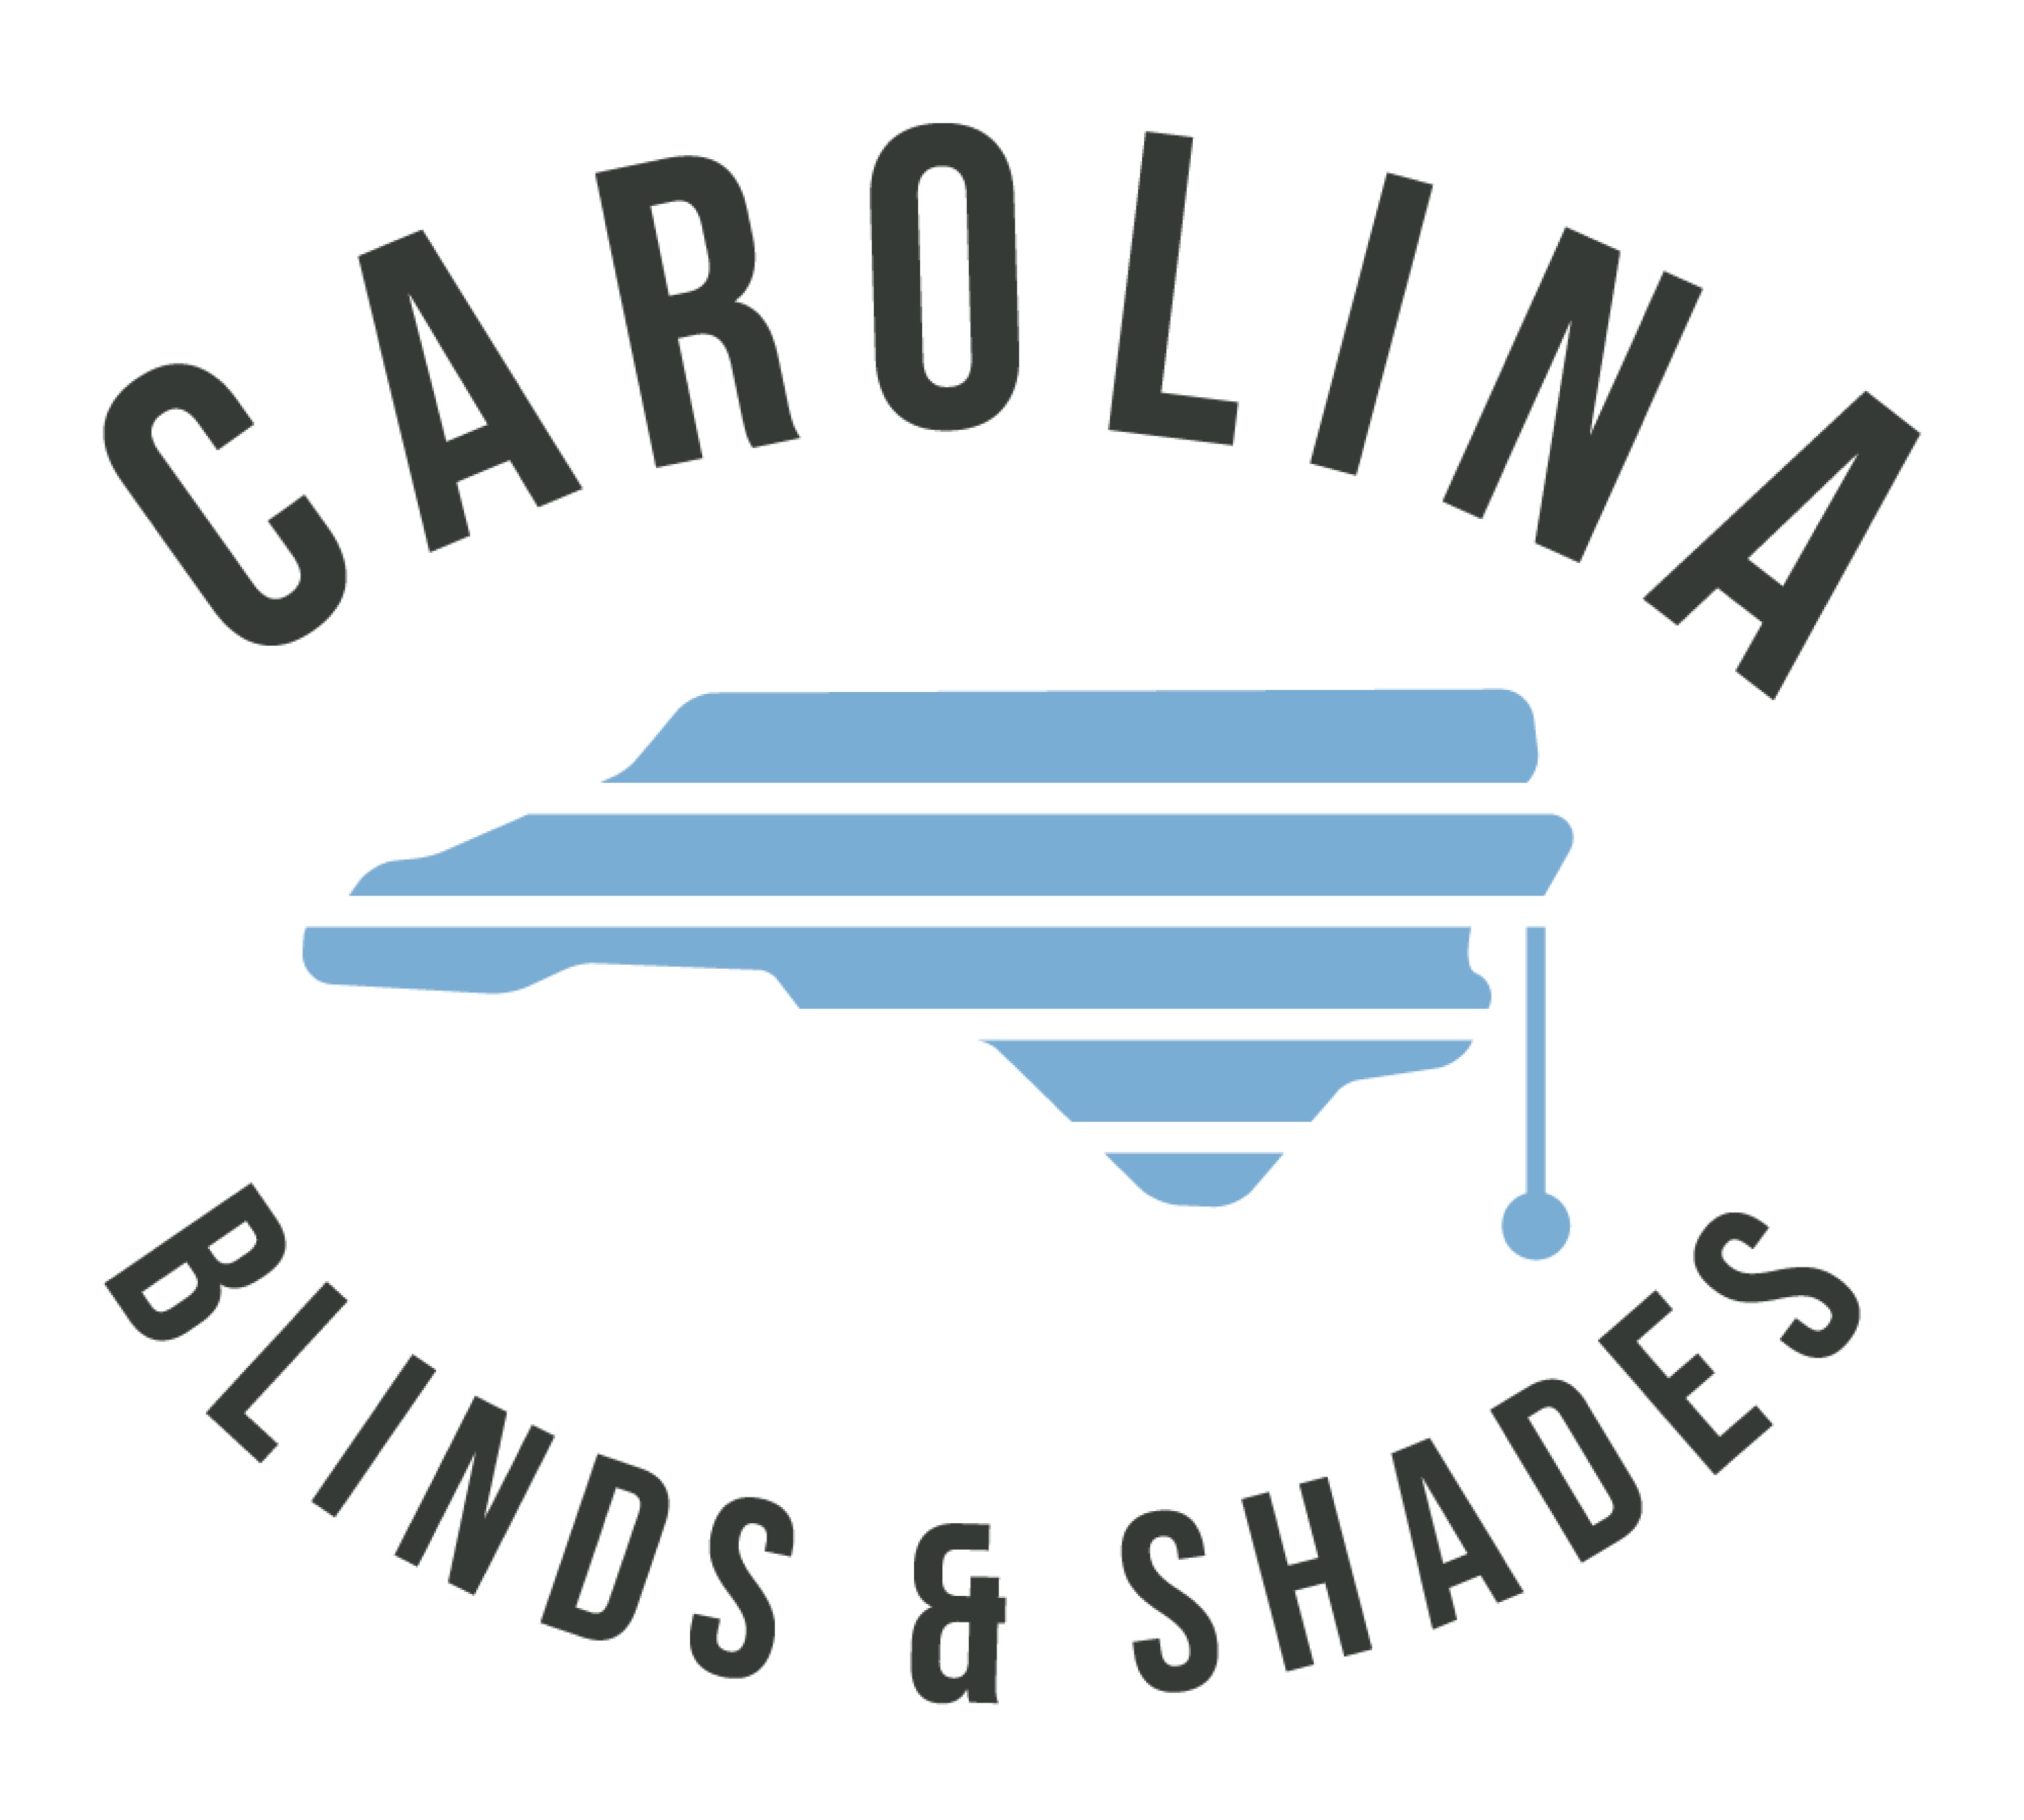 Carolina Blinds and Shades Logo